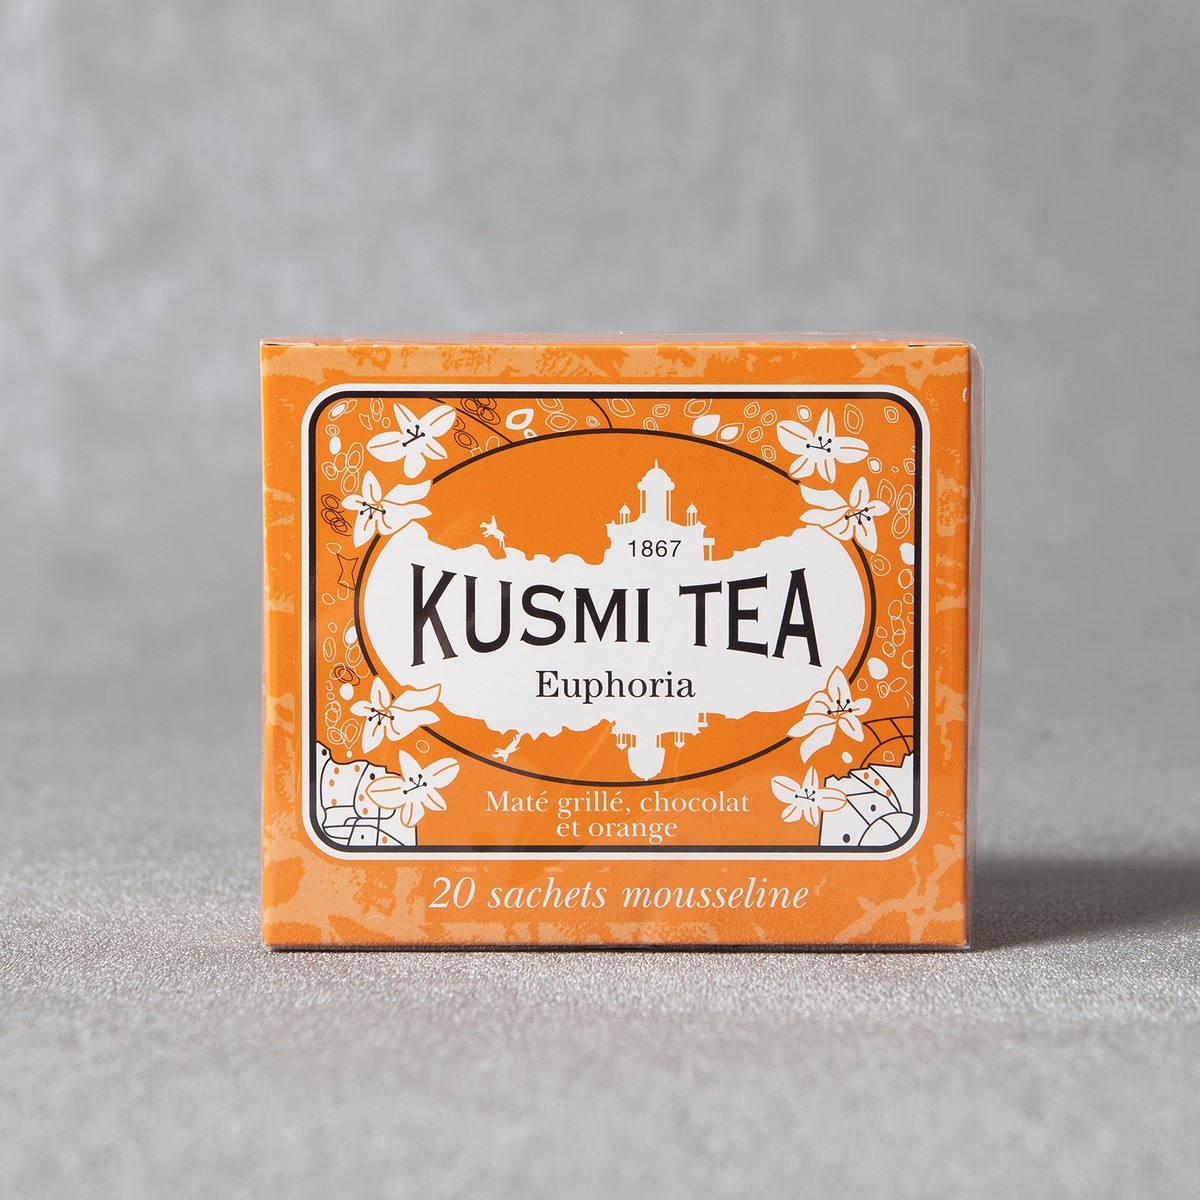 Kusmi Tea  Euphoria boite 20 sachets  boite 20 sachets